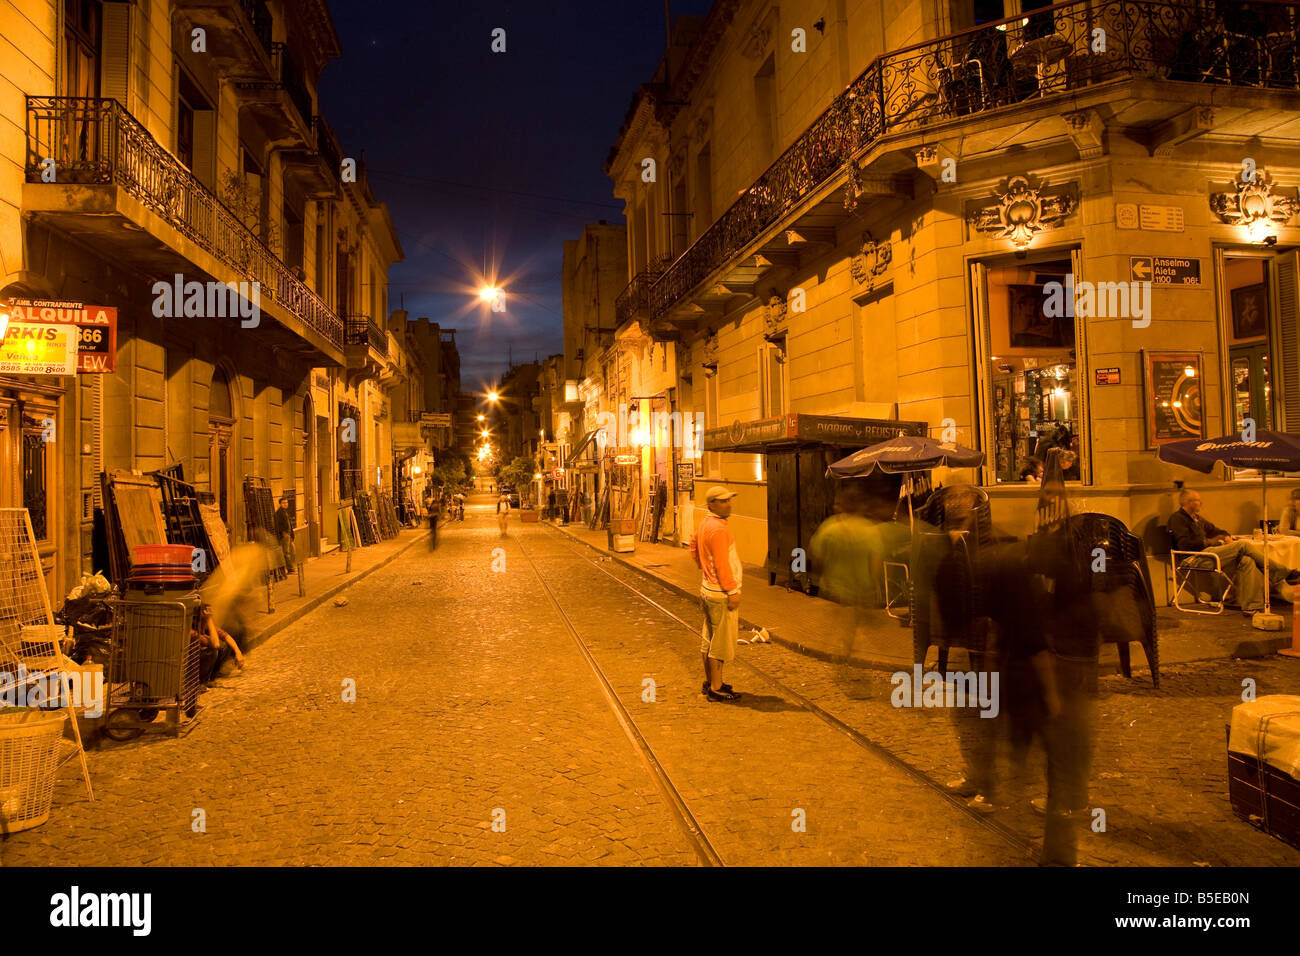 Calle de noche  Calles de noche, Buenos aires turismo, Fotografía